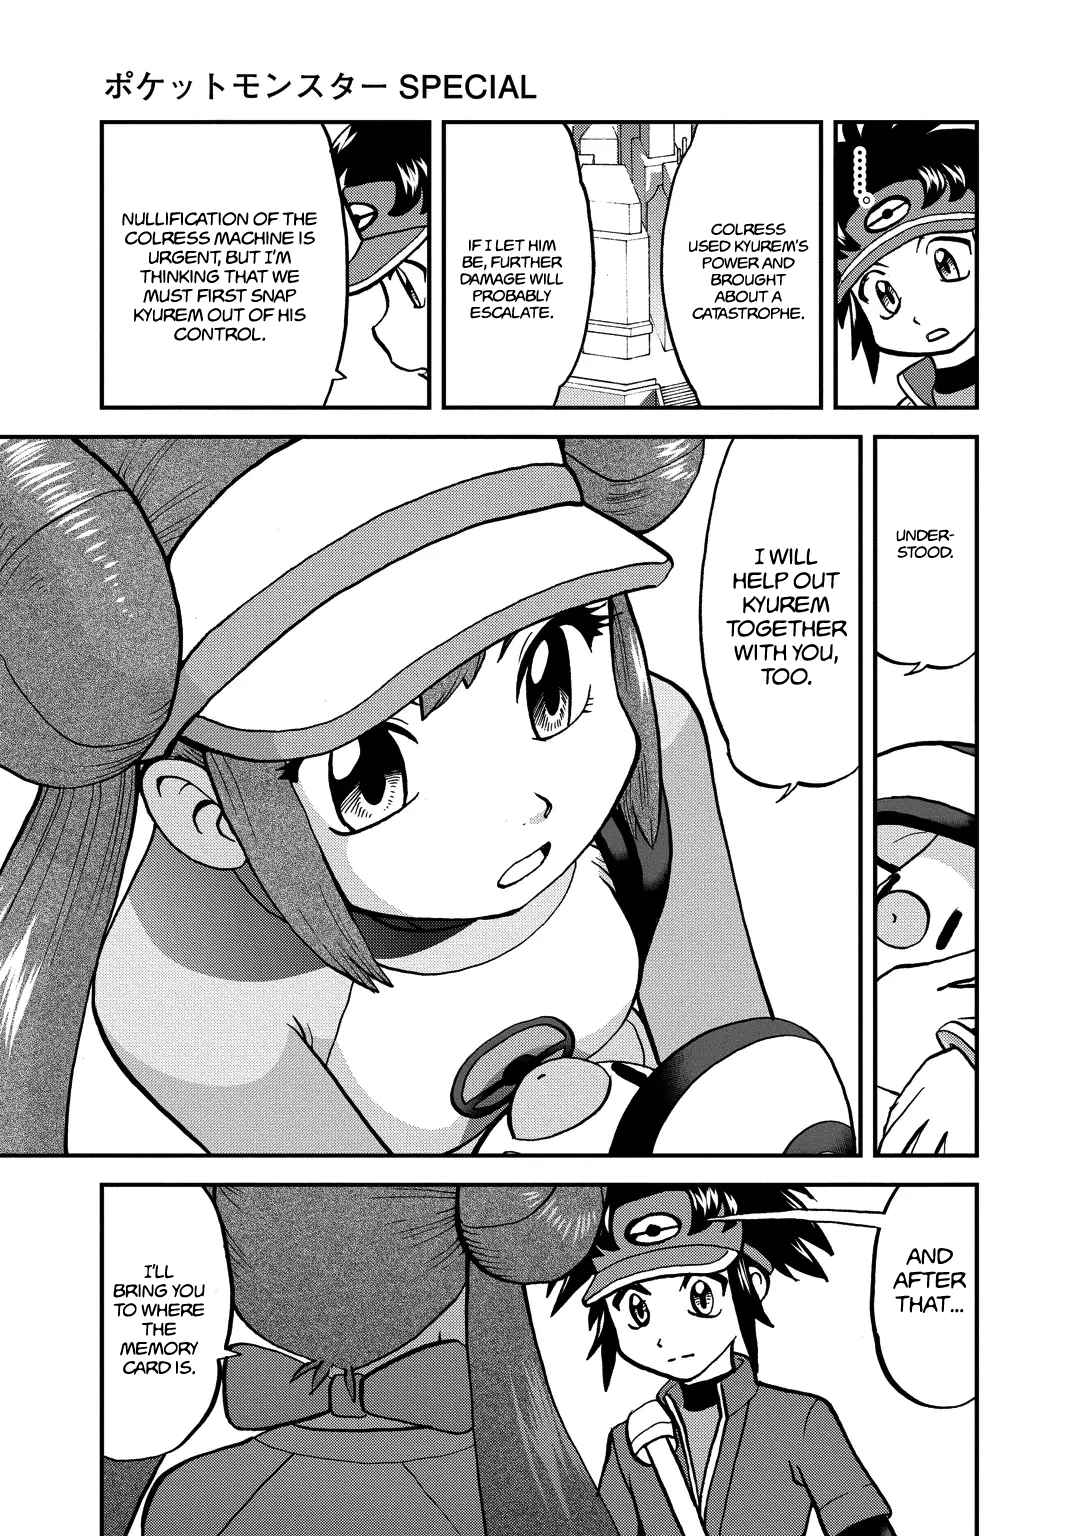 Pokémon Special Vol. 53 Ch. 540